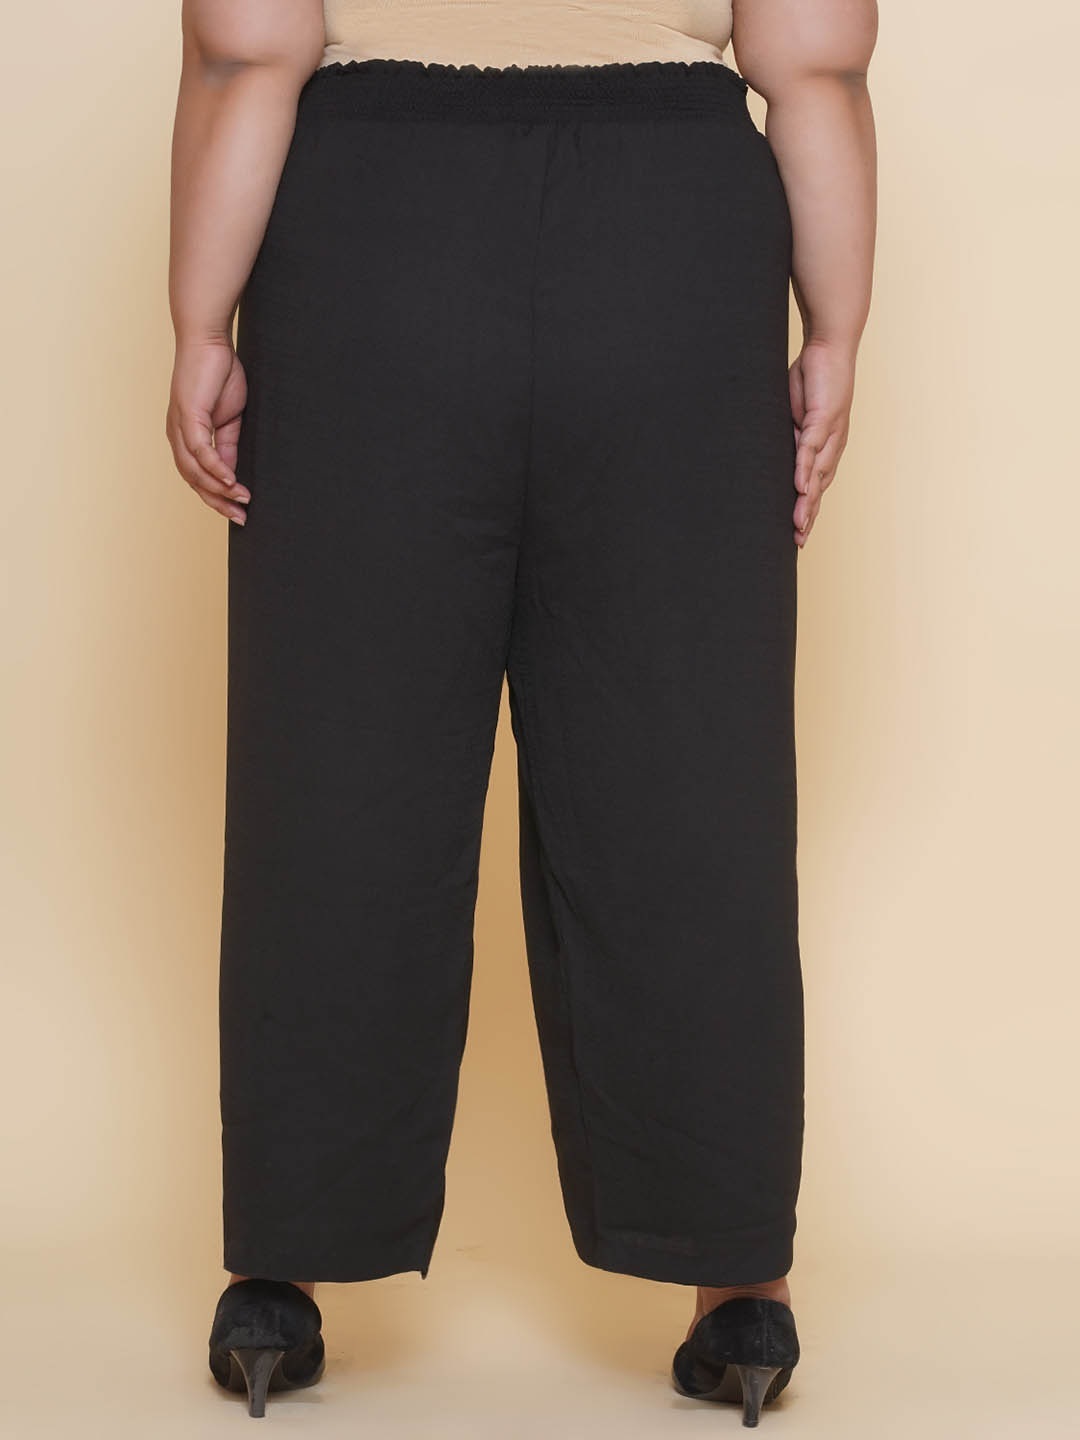 bottomwear_kiaahvi/trousers/KIPL9001/kipl9001-5.jpg